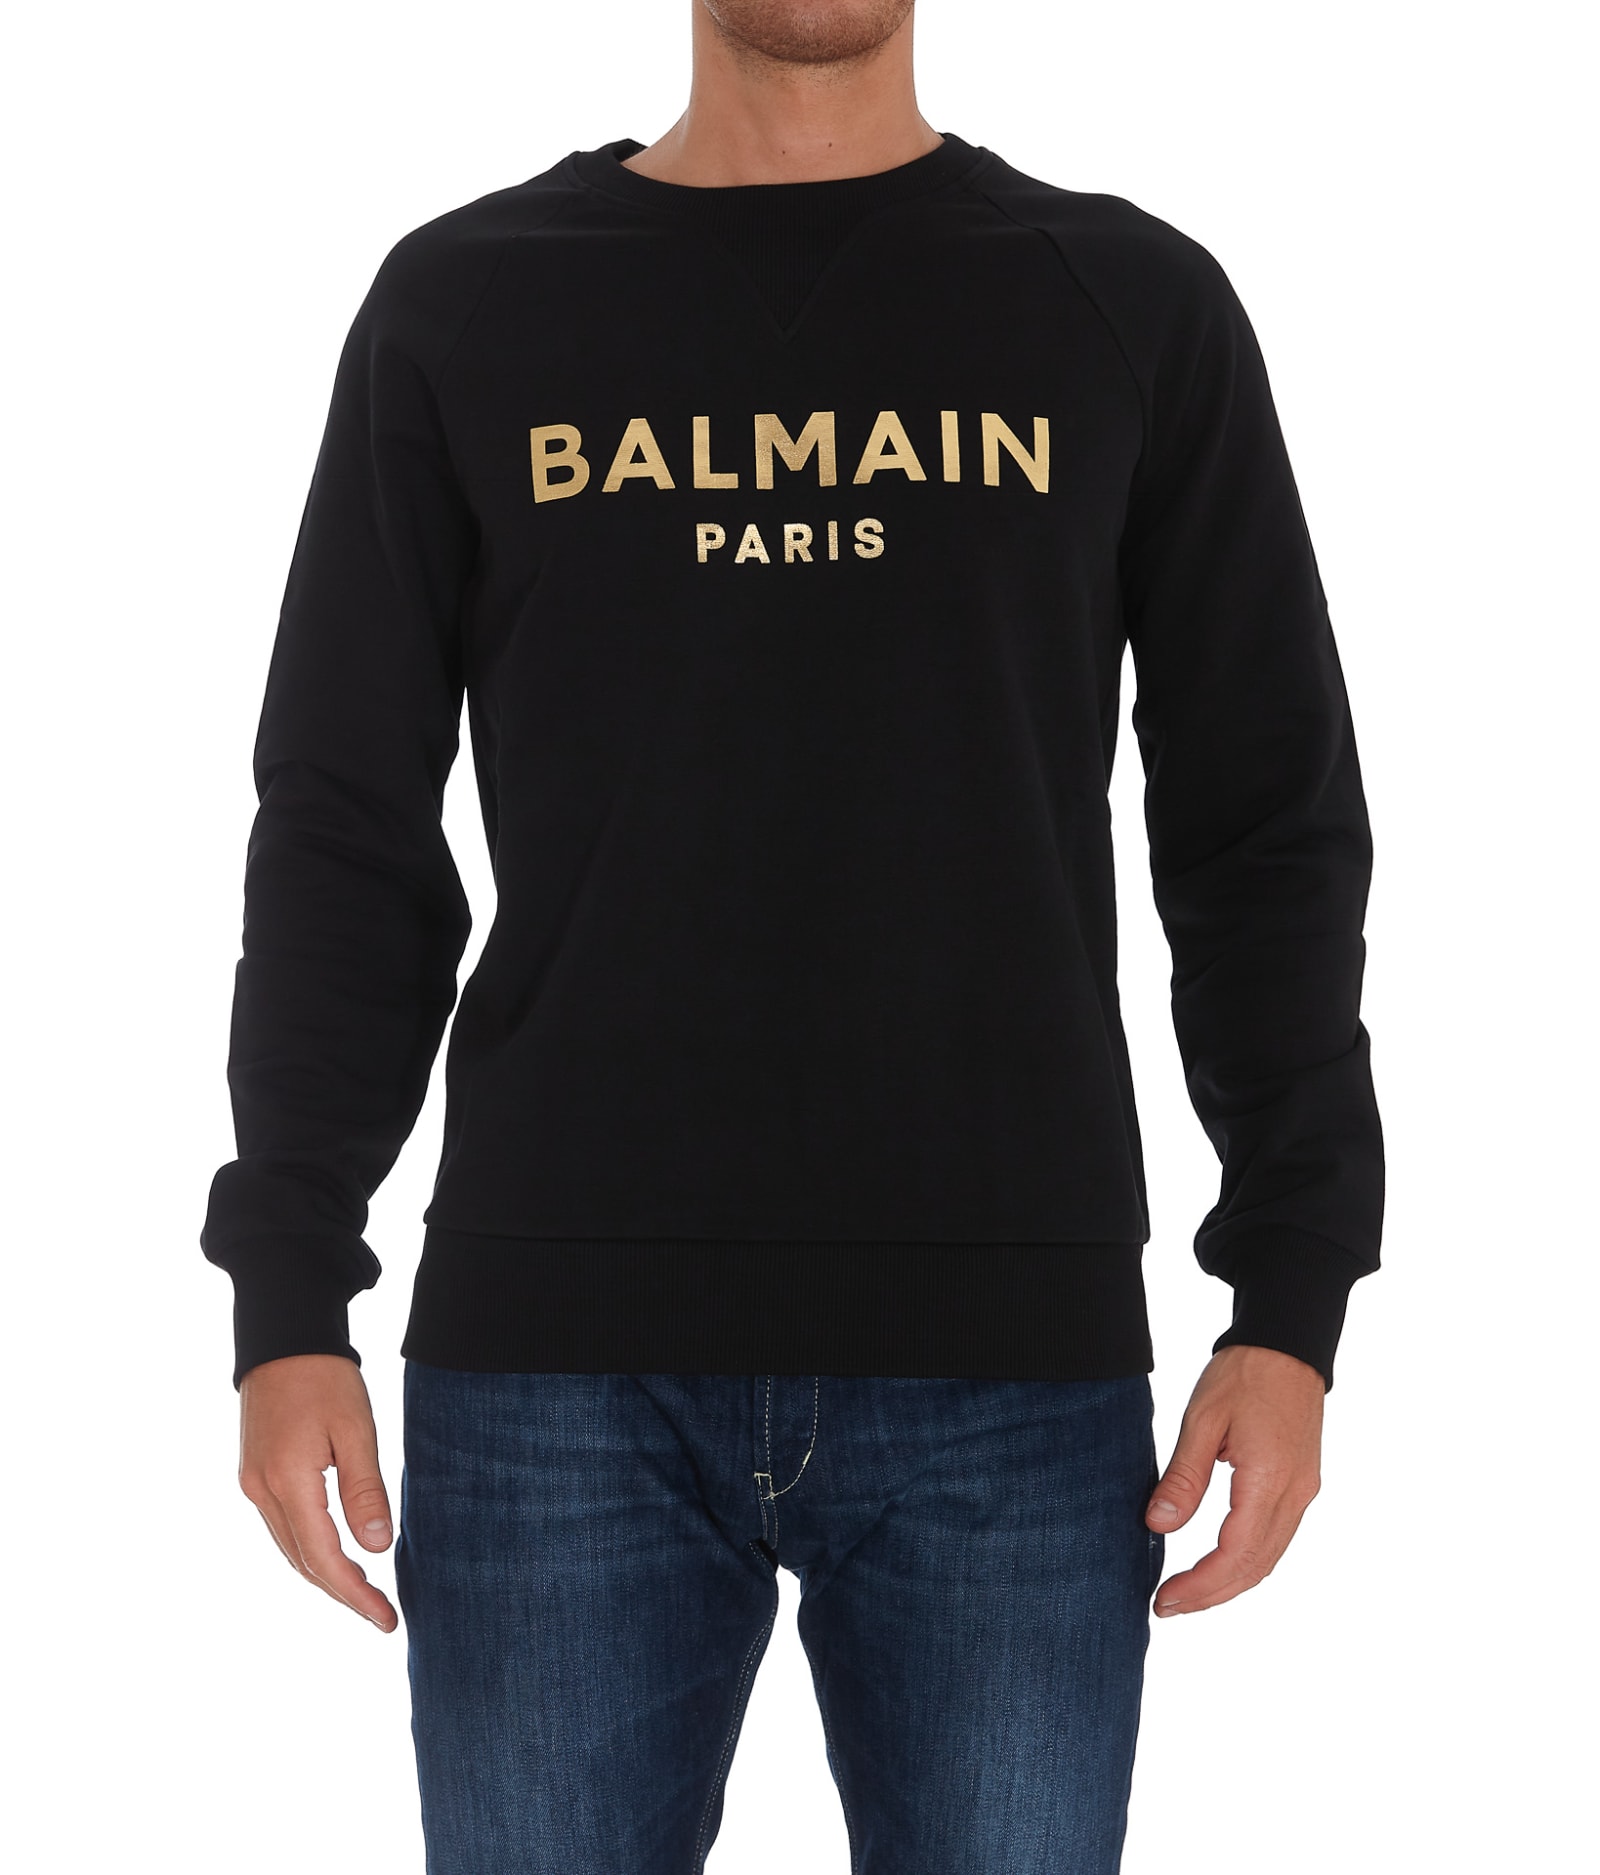 Balmain Golden Logo Balmain Paris Sweatshirt